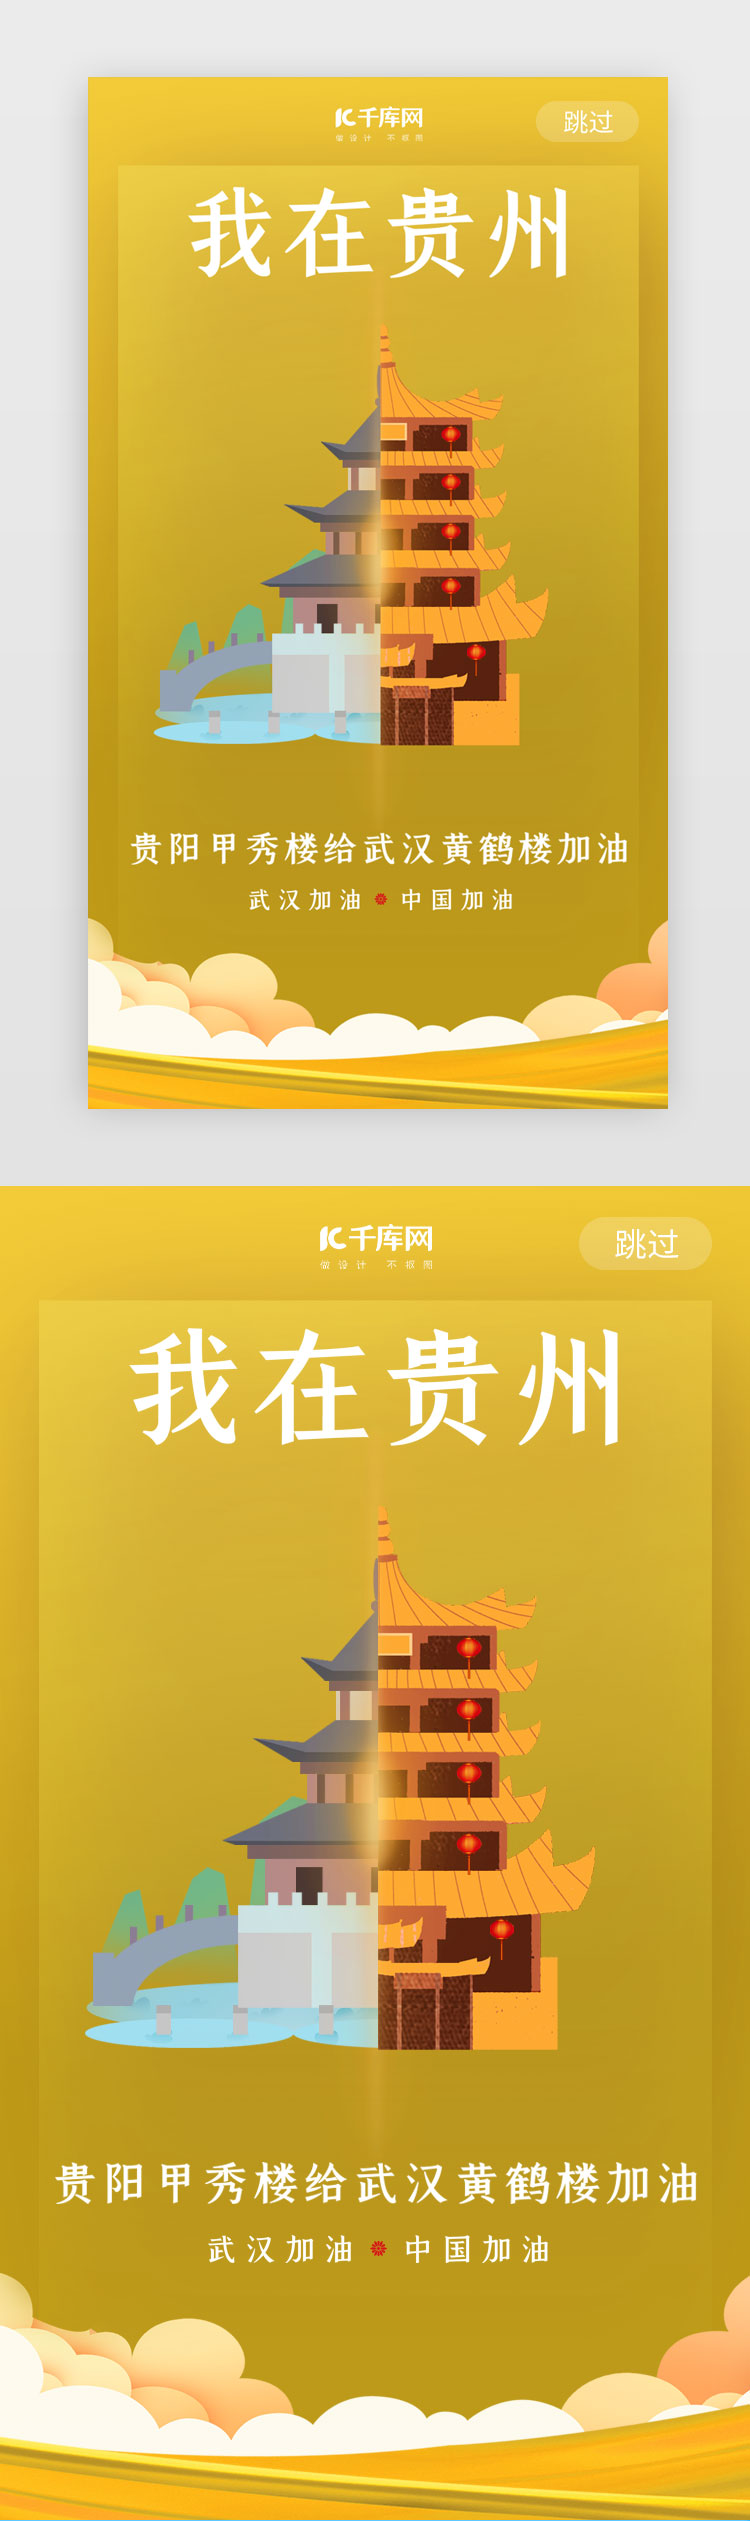 武汉加油贵州甲秀楼黄色闪屏图片